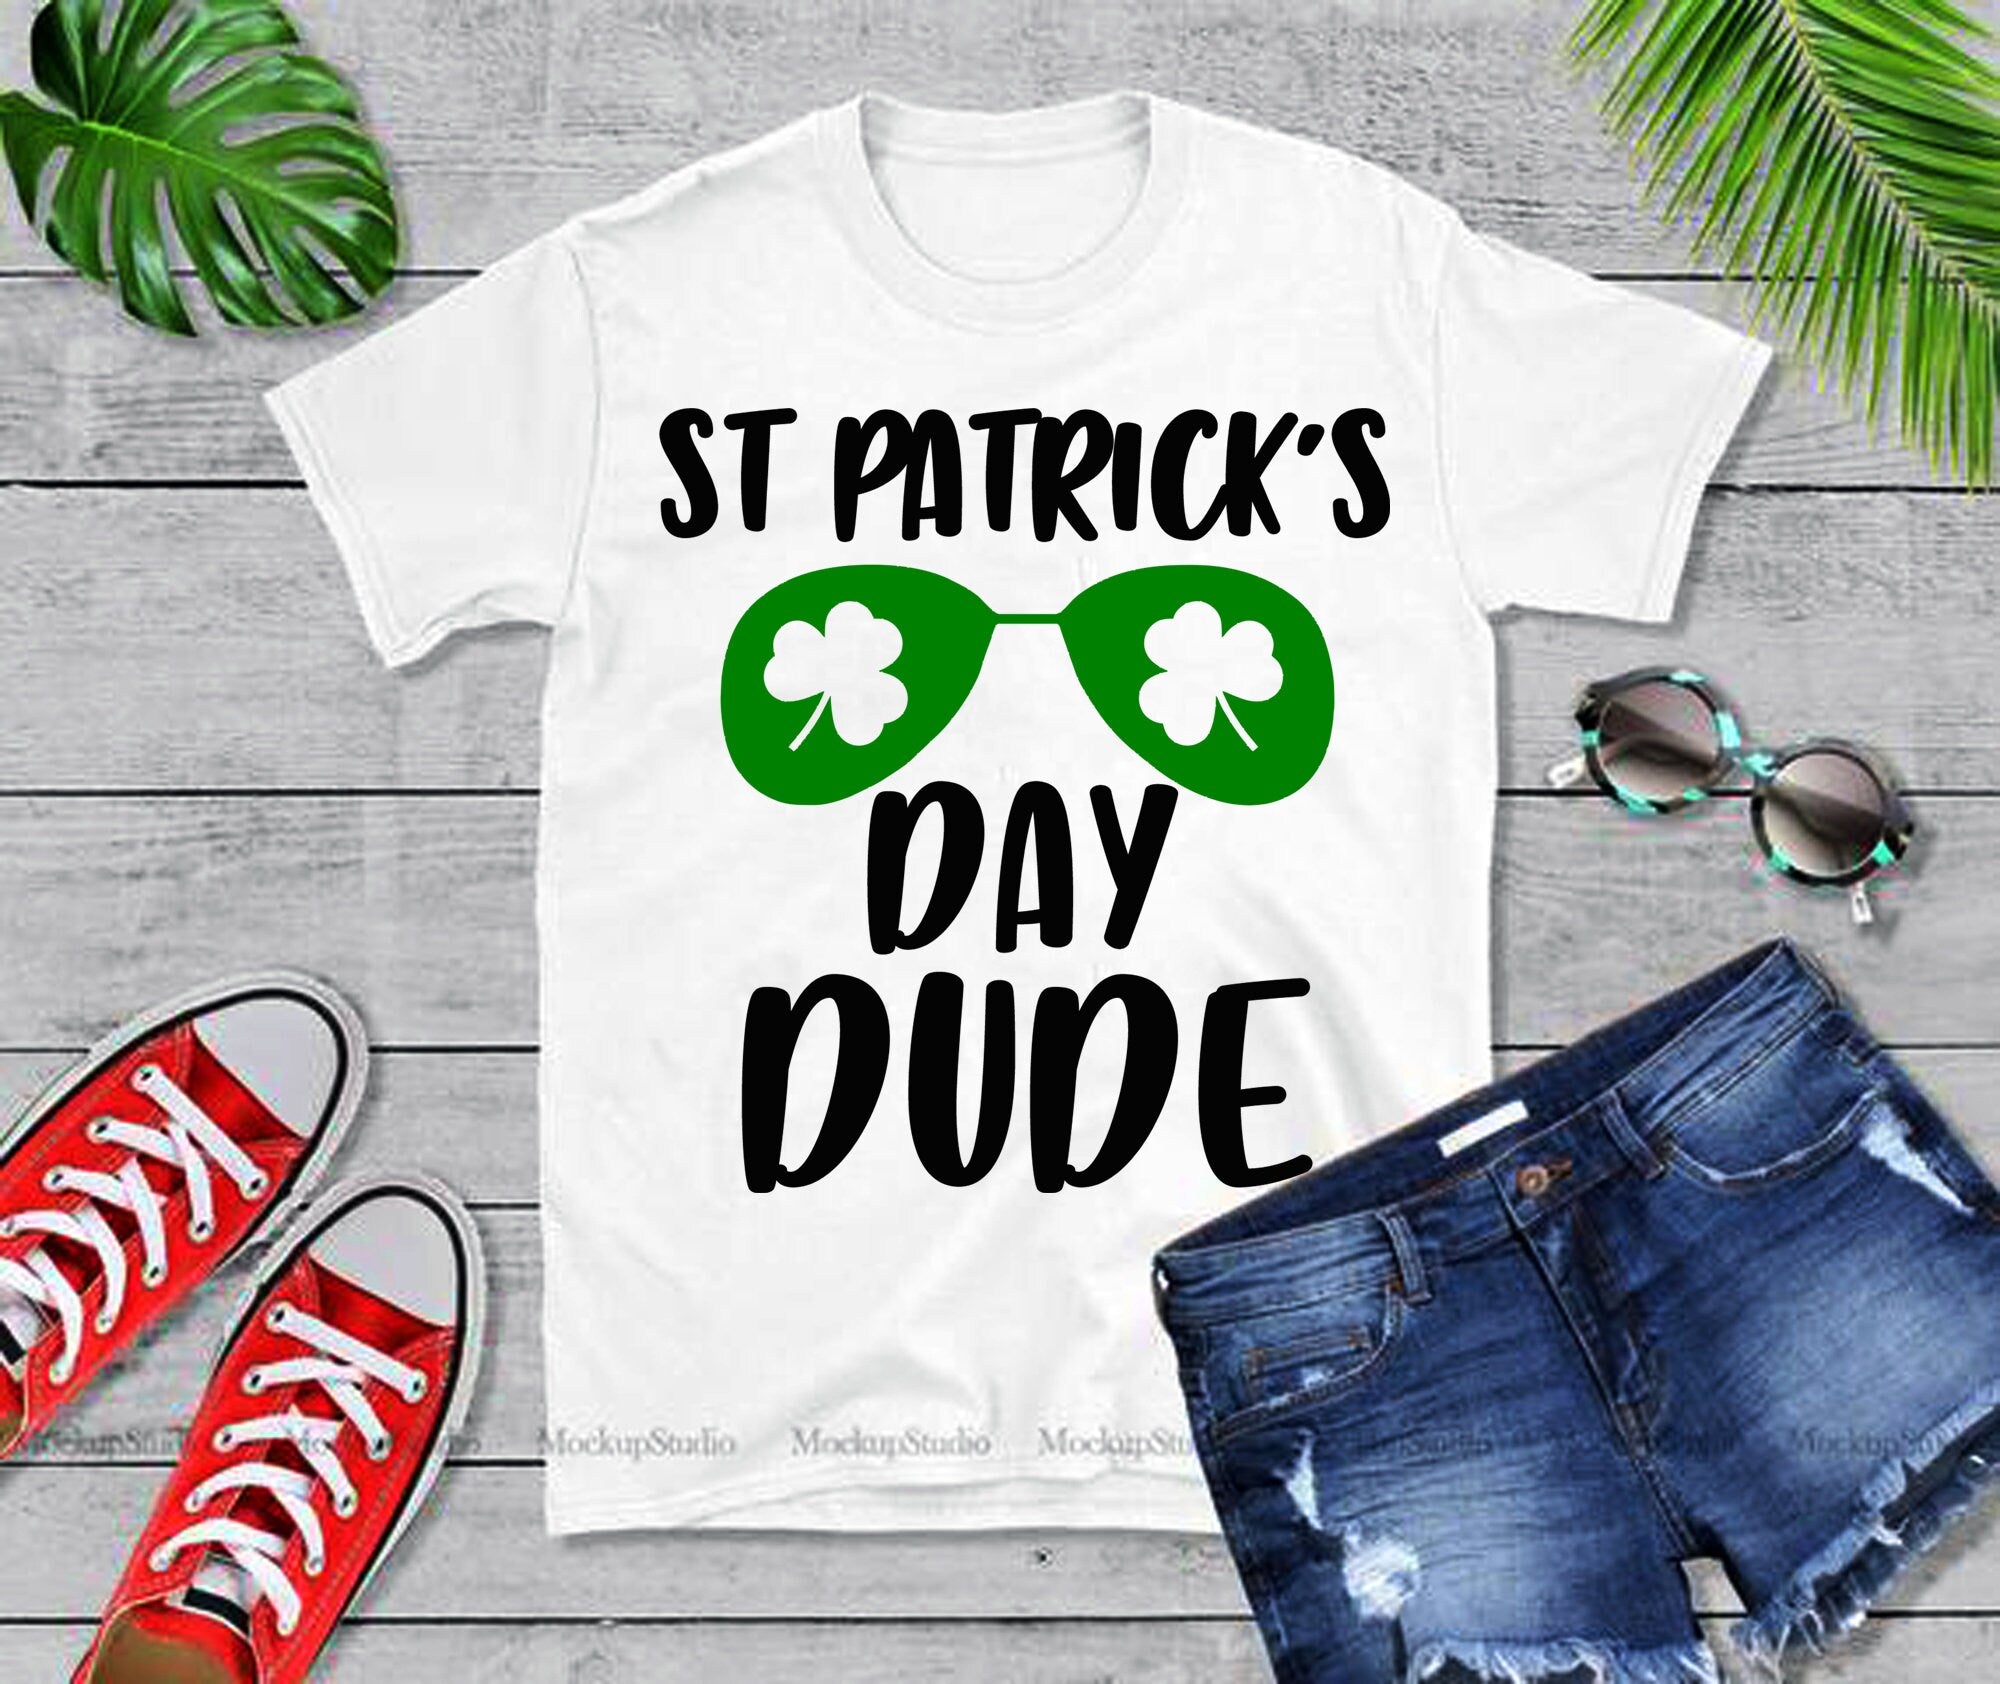 Tricouri Dude de Ziua Sf. Patrick - plusminusco.com